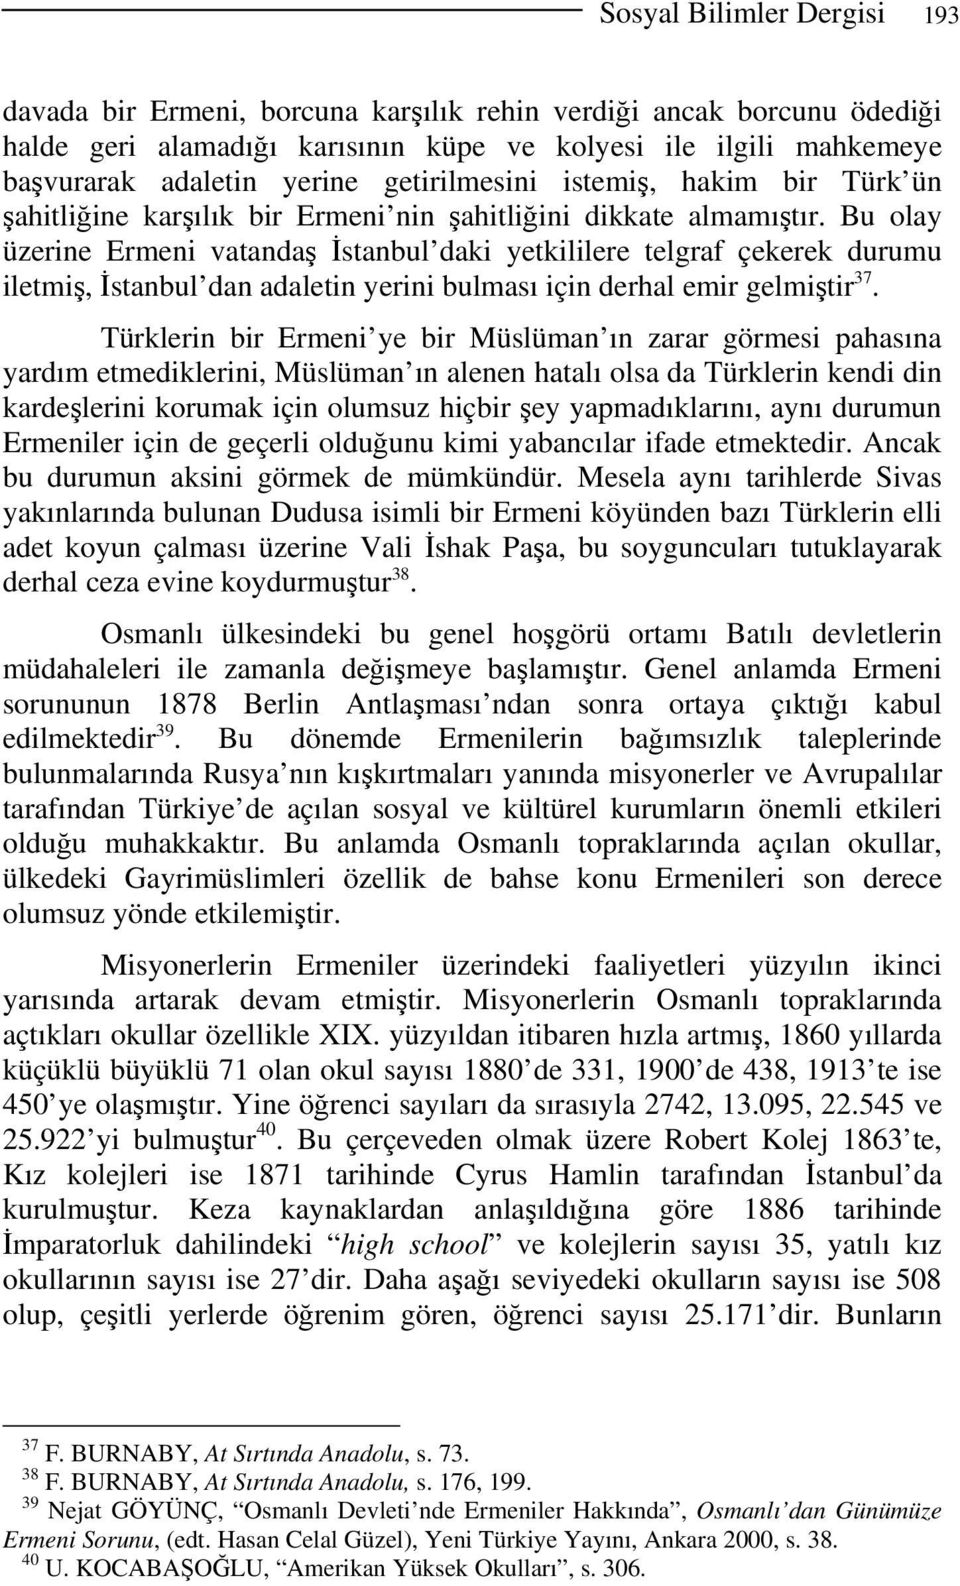 Bu olay üzerine Ermeni vatandaş İstanbul daki yetkililere telgraf çekerek durumu iletmiş, İstanbul dan adaletin yerini bulması için derhal emir gelmiştir 37.